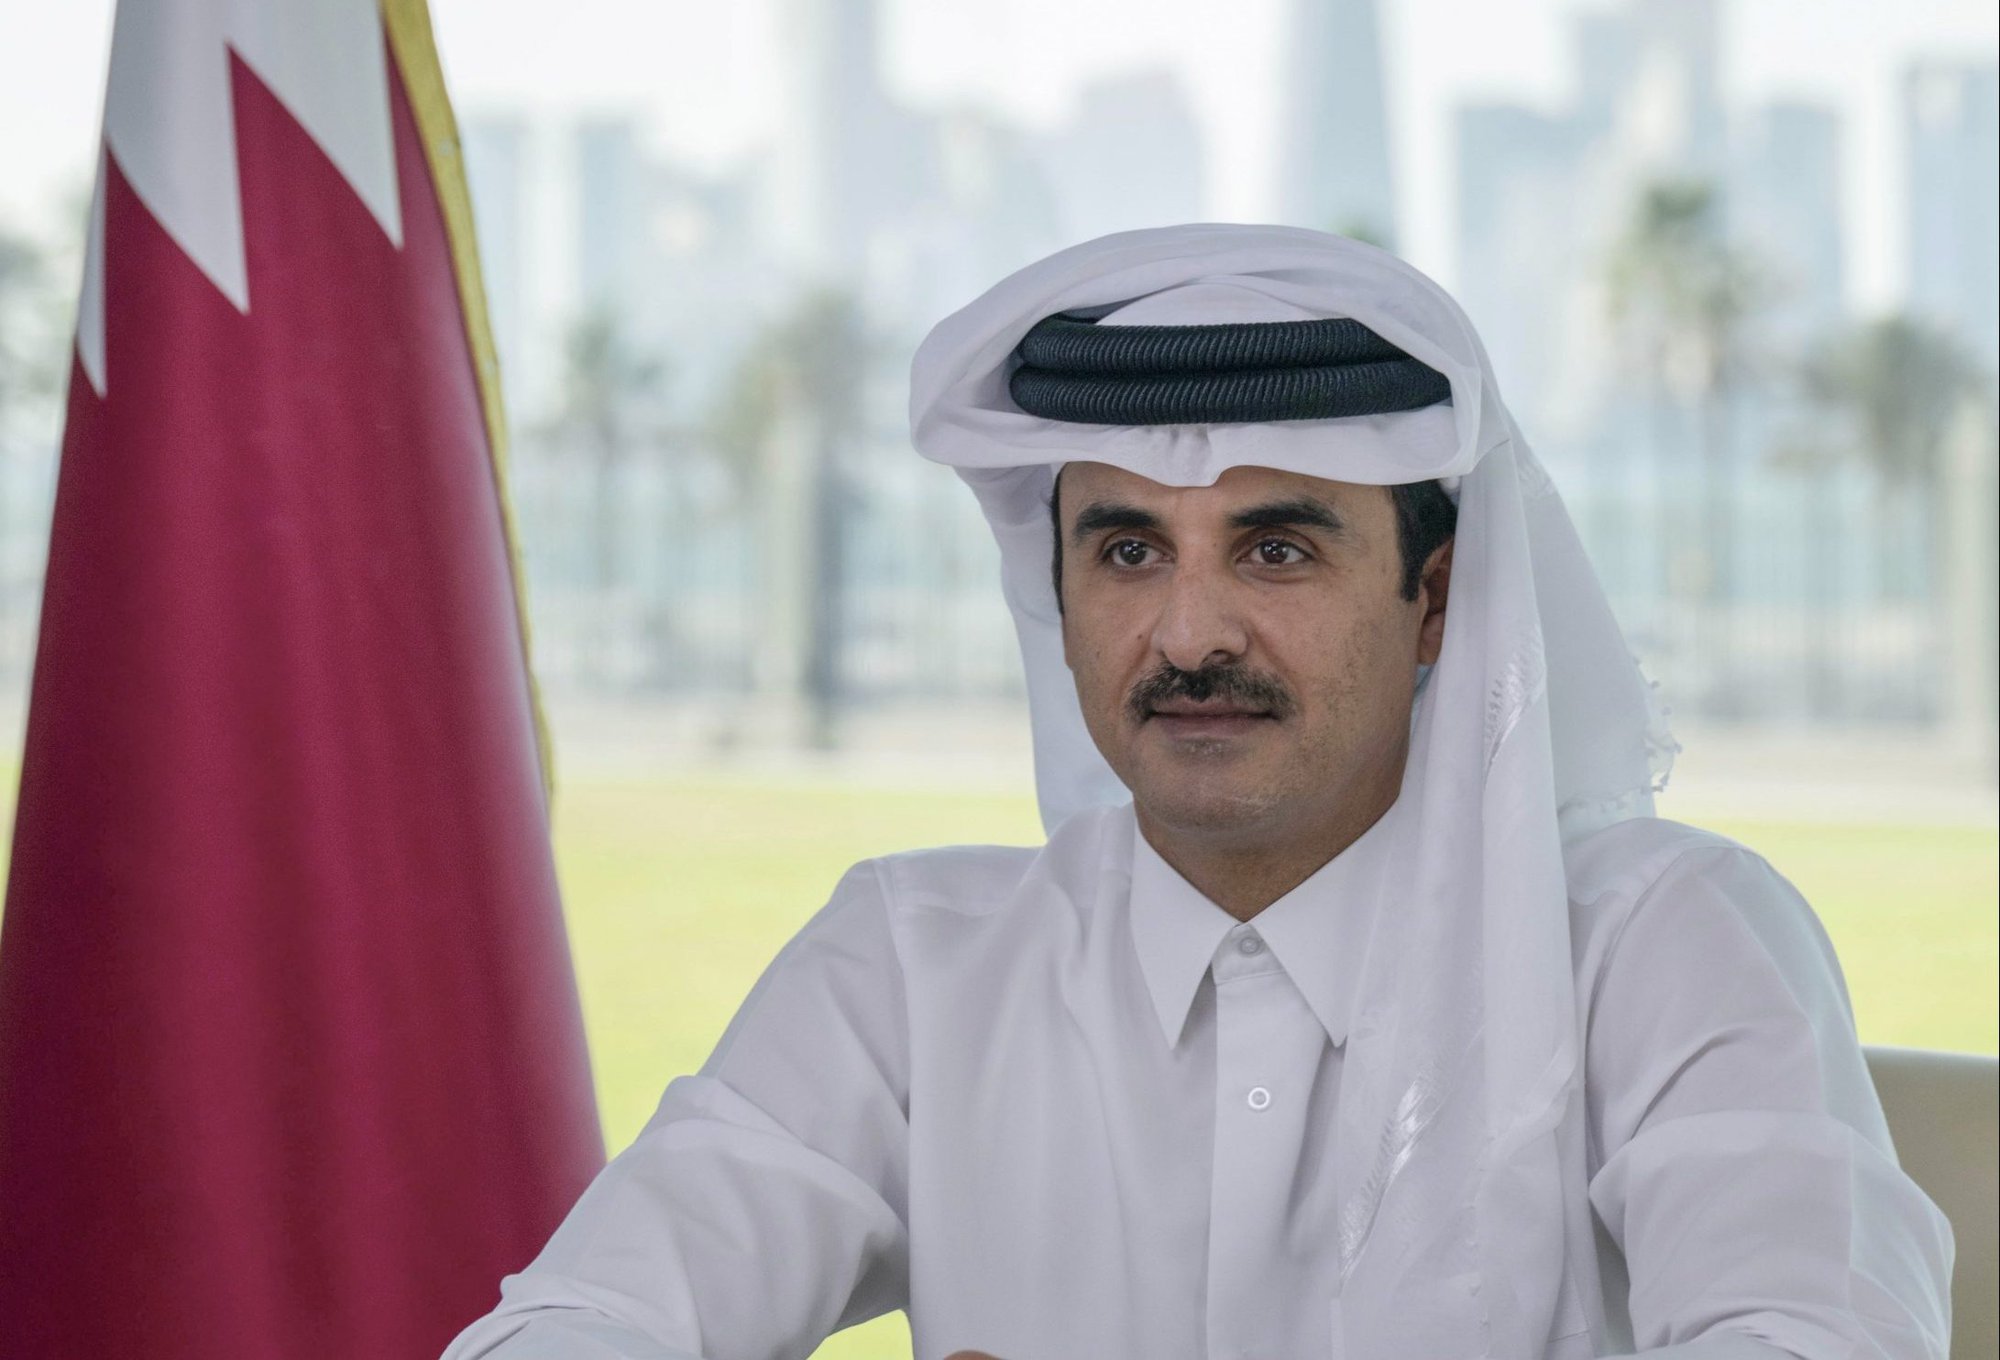 Vị vua đem World Cup 2022 về cho Qatar: Quân chủ tại vị trẻ nhất thế giới, 'bị' chọn làm vua sau khi anh trai bỏ ngôi thái tử - Ảnh 1.